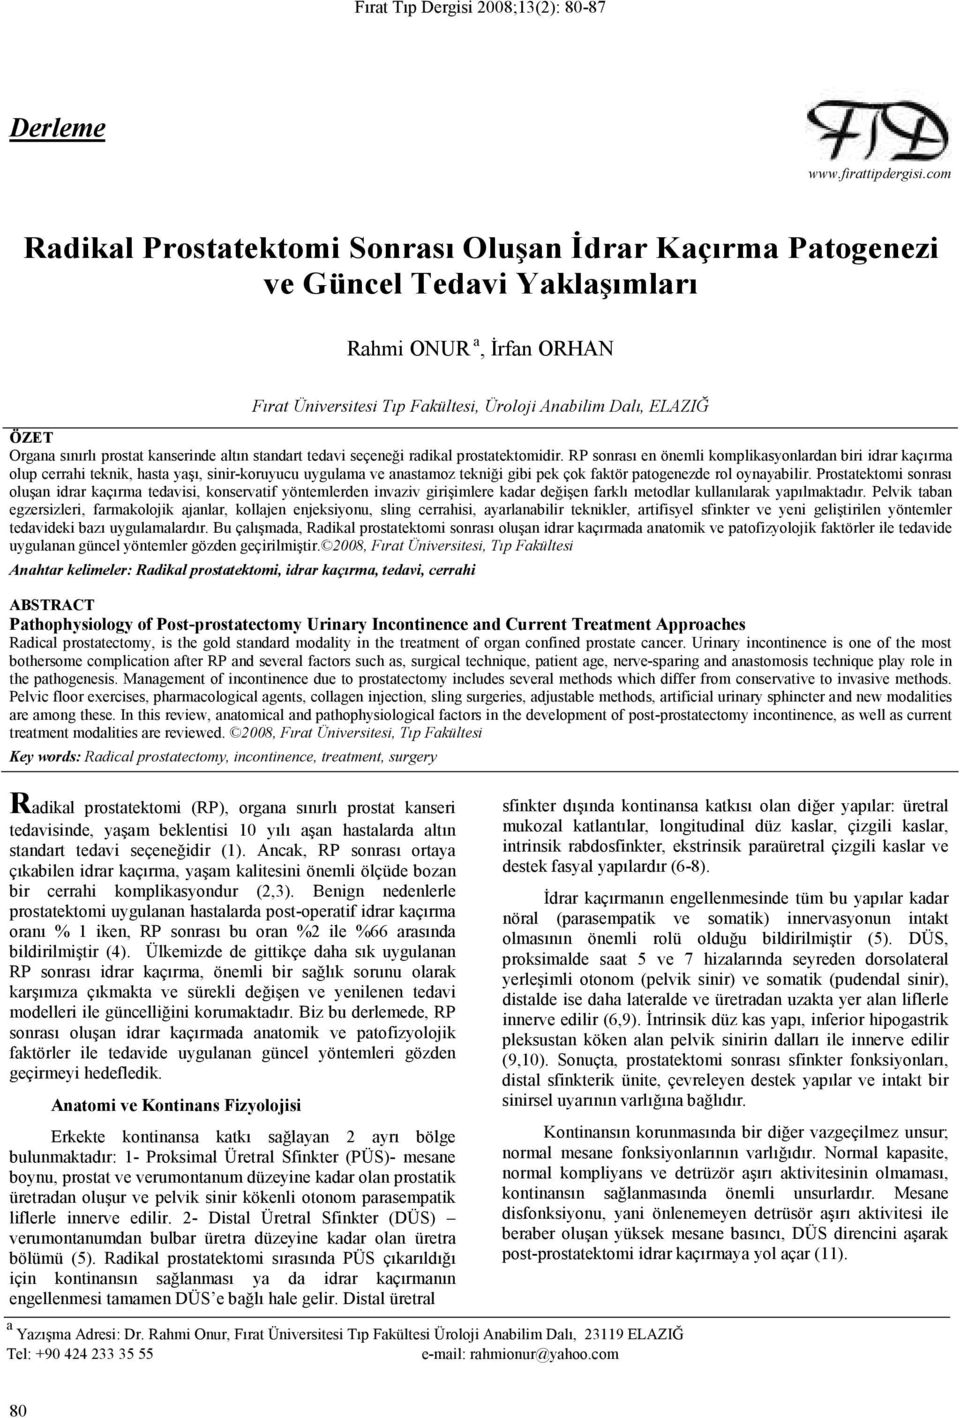 sınırlı prostat kanserinde altın standart tedavi seçeneği radikal prostatektomidir.